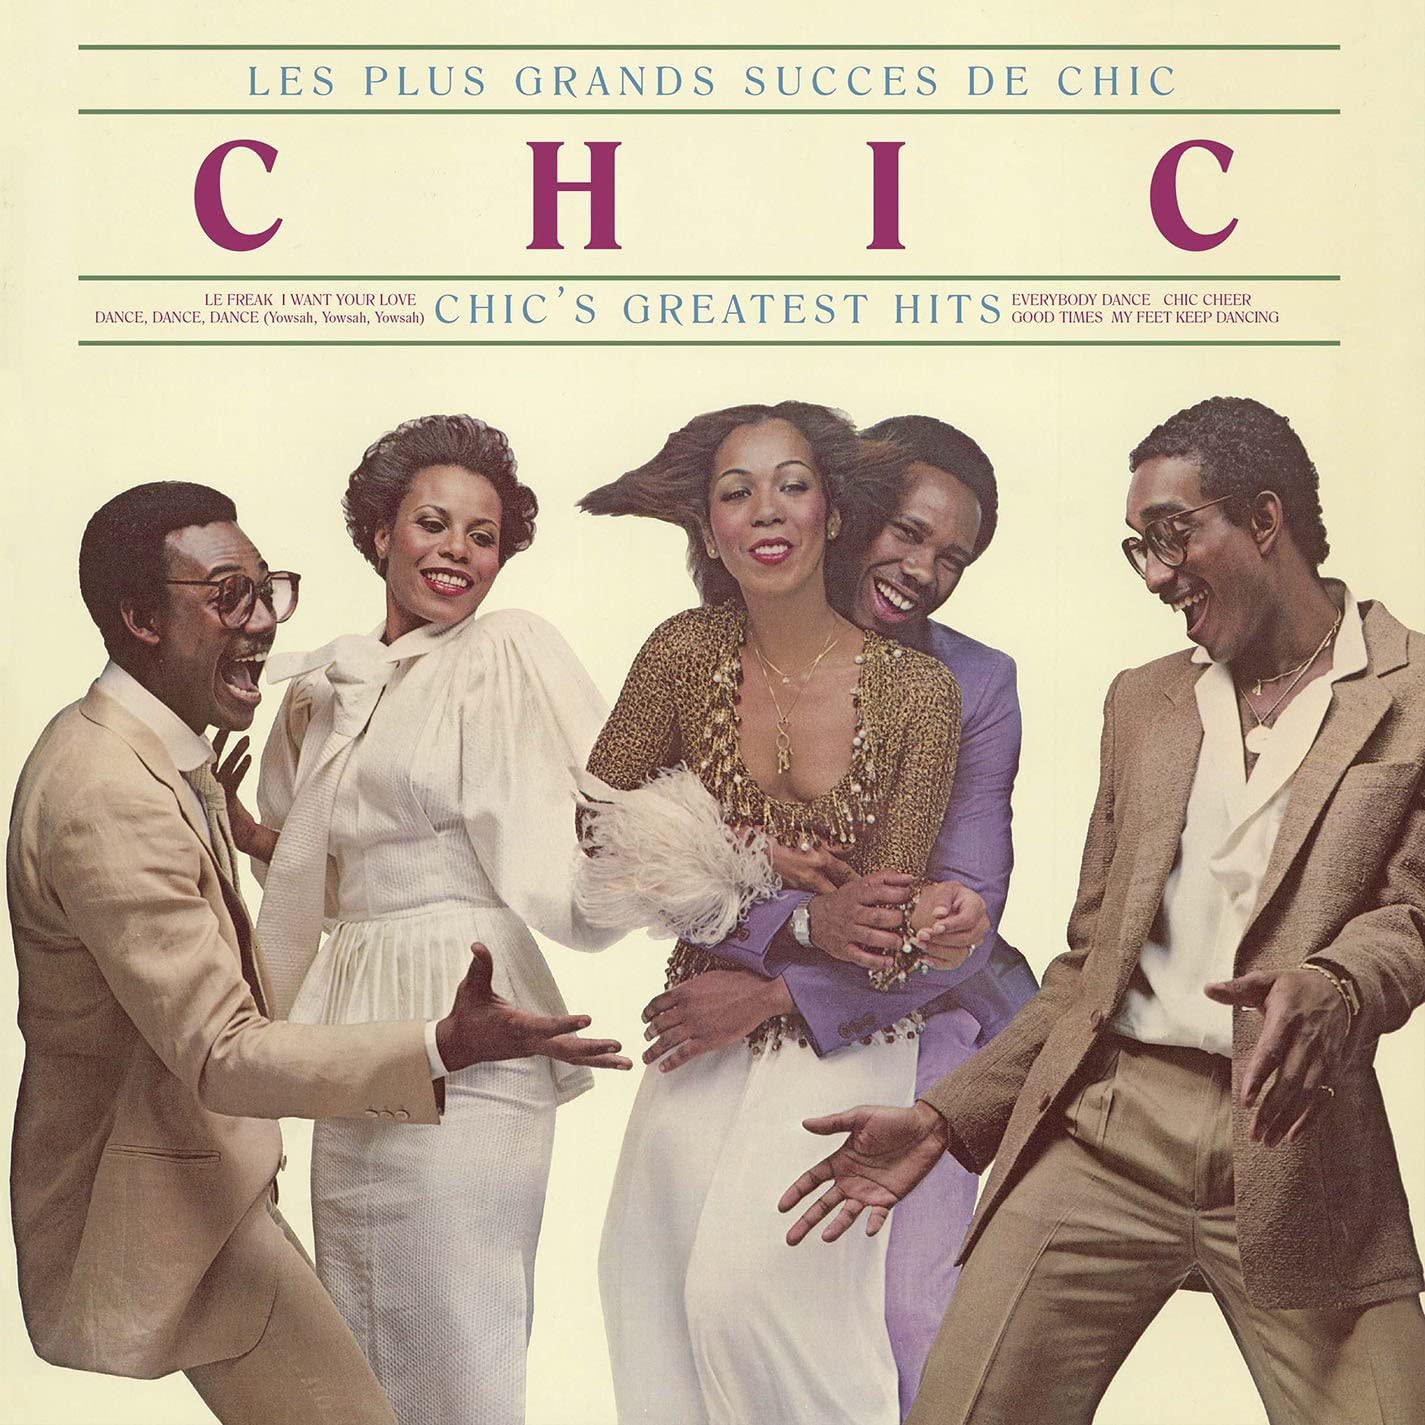 Les Plus Grands Succes De Chic [Chic's Greatest Hits] (180g Vinyl)